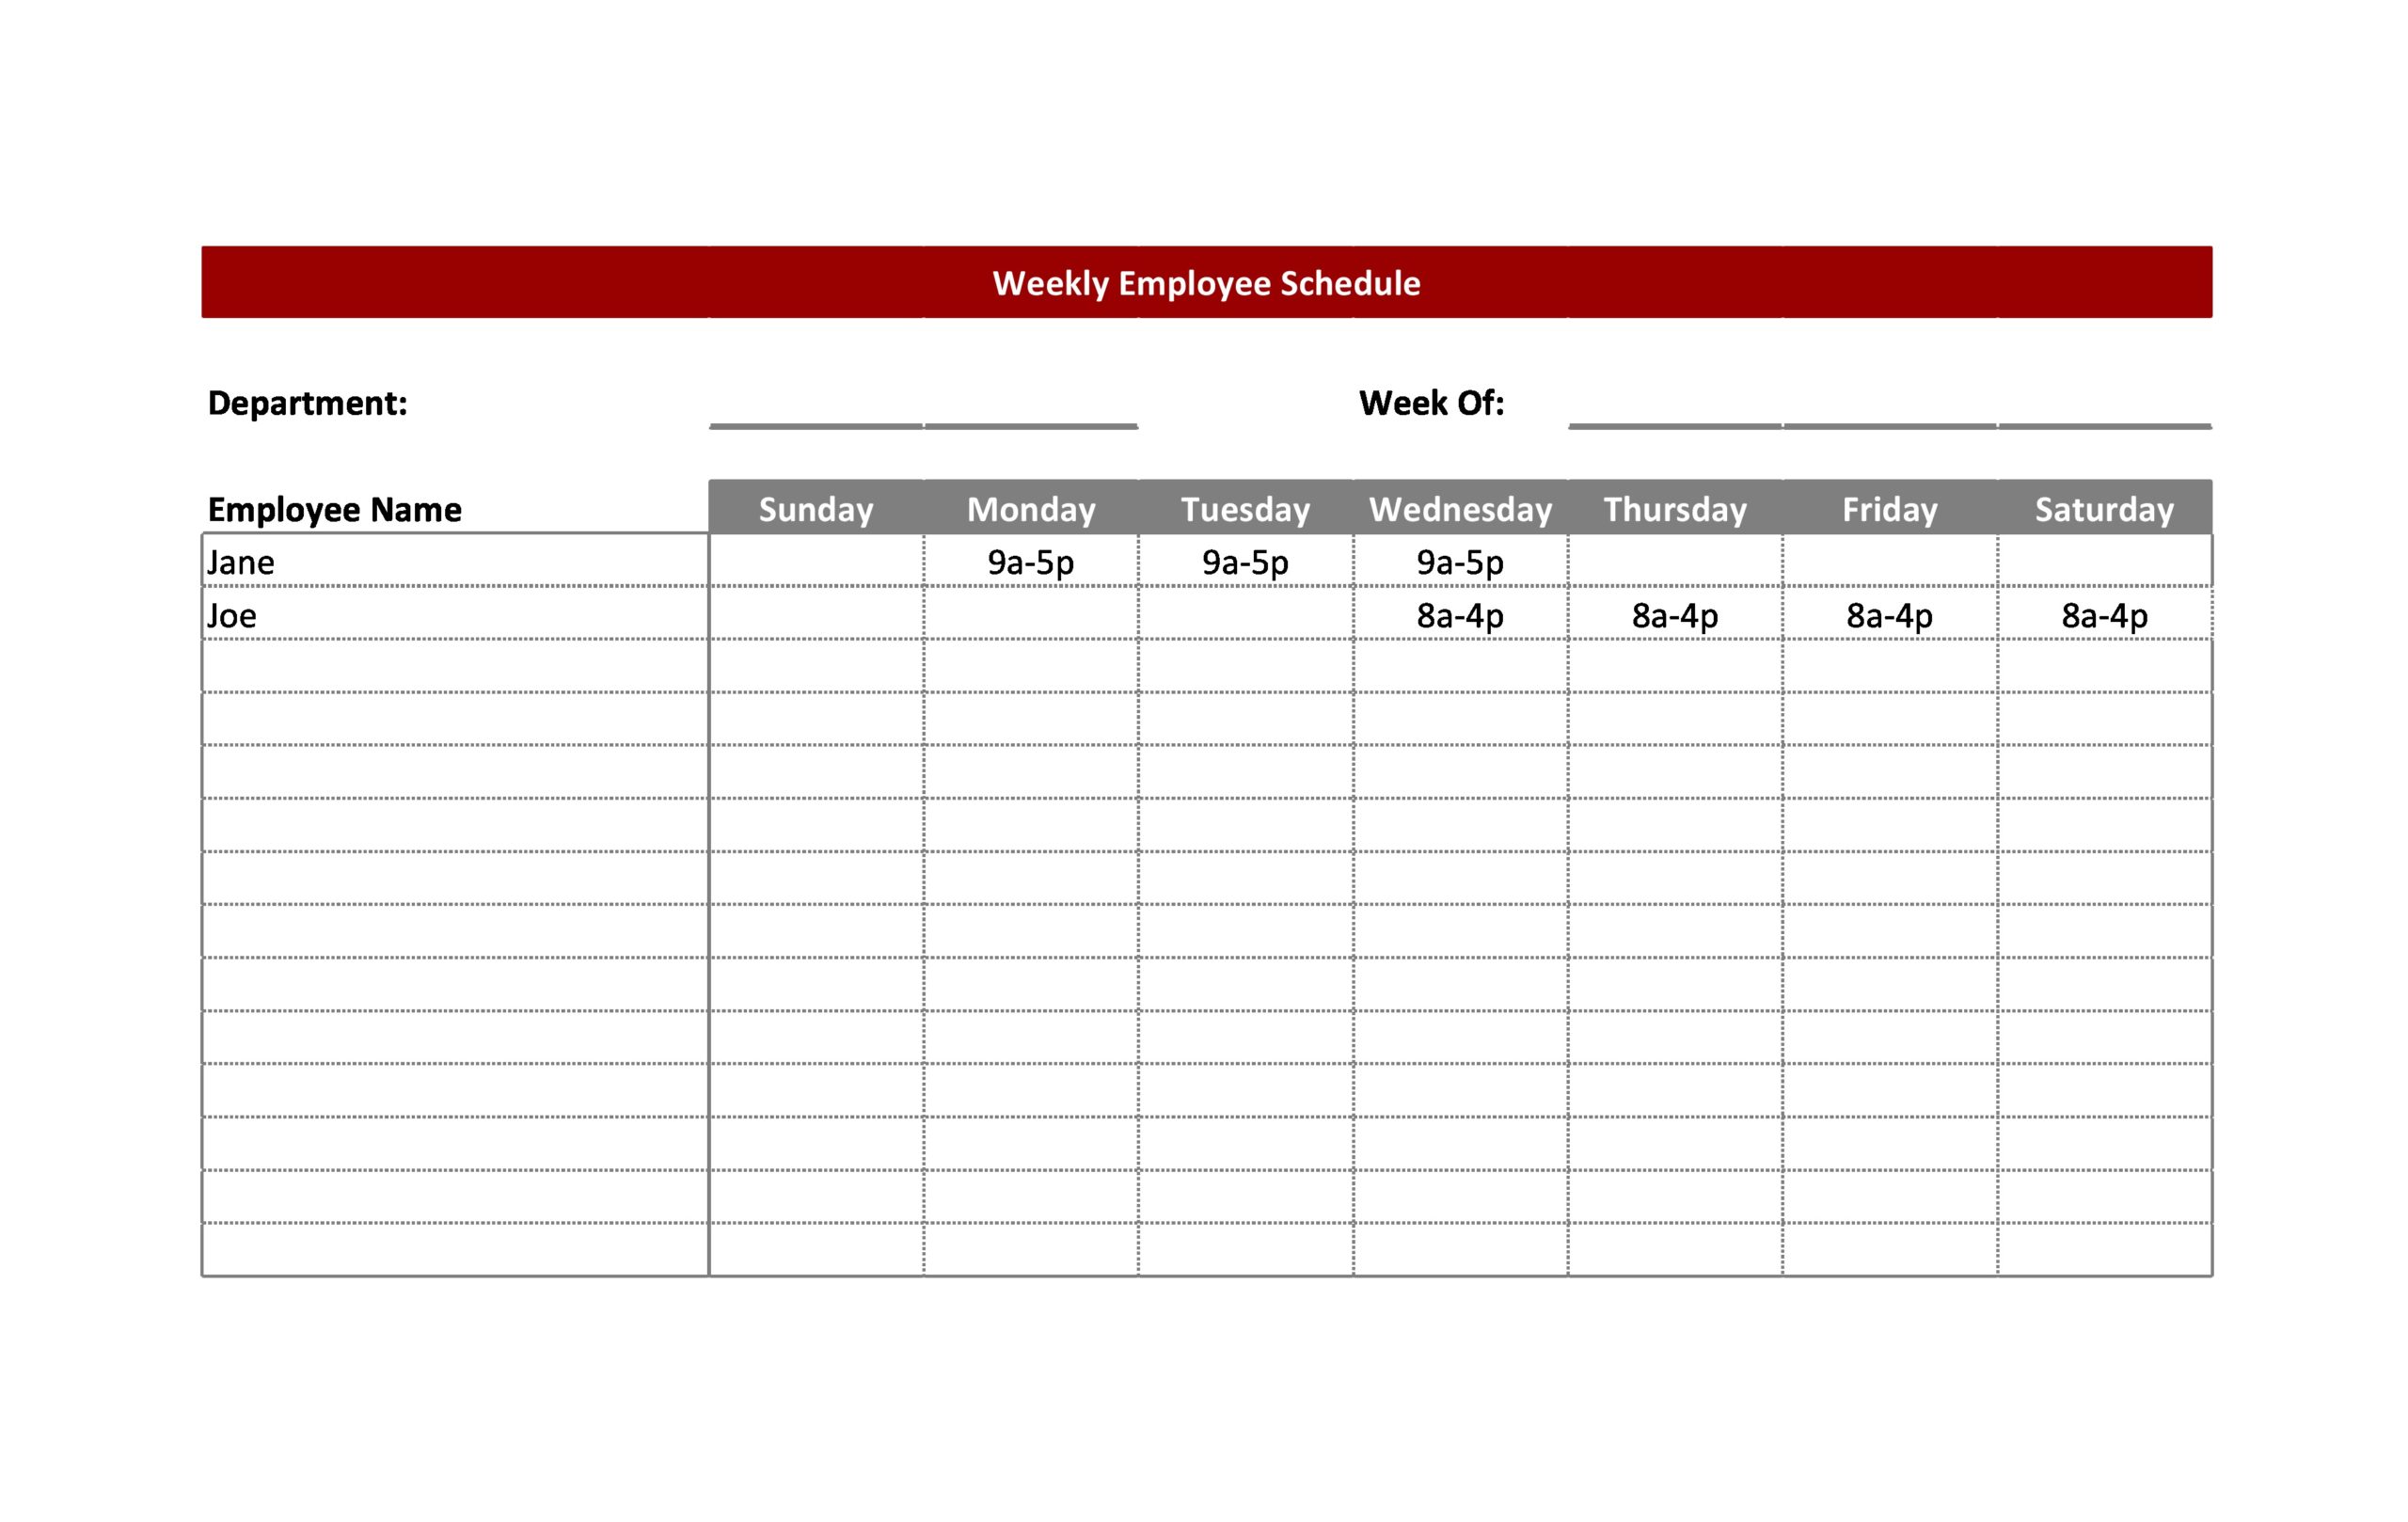 Free Weekly Work Schedule Www ssphealthdev